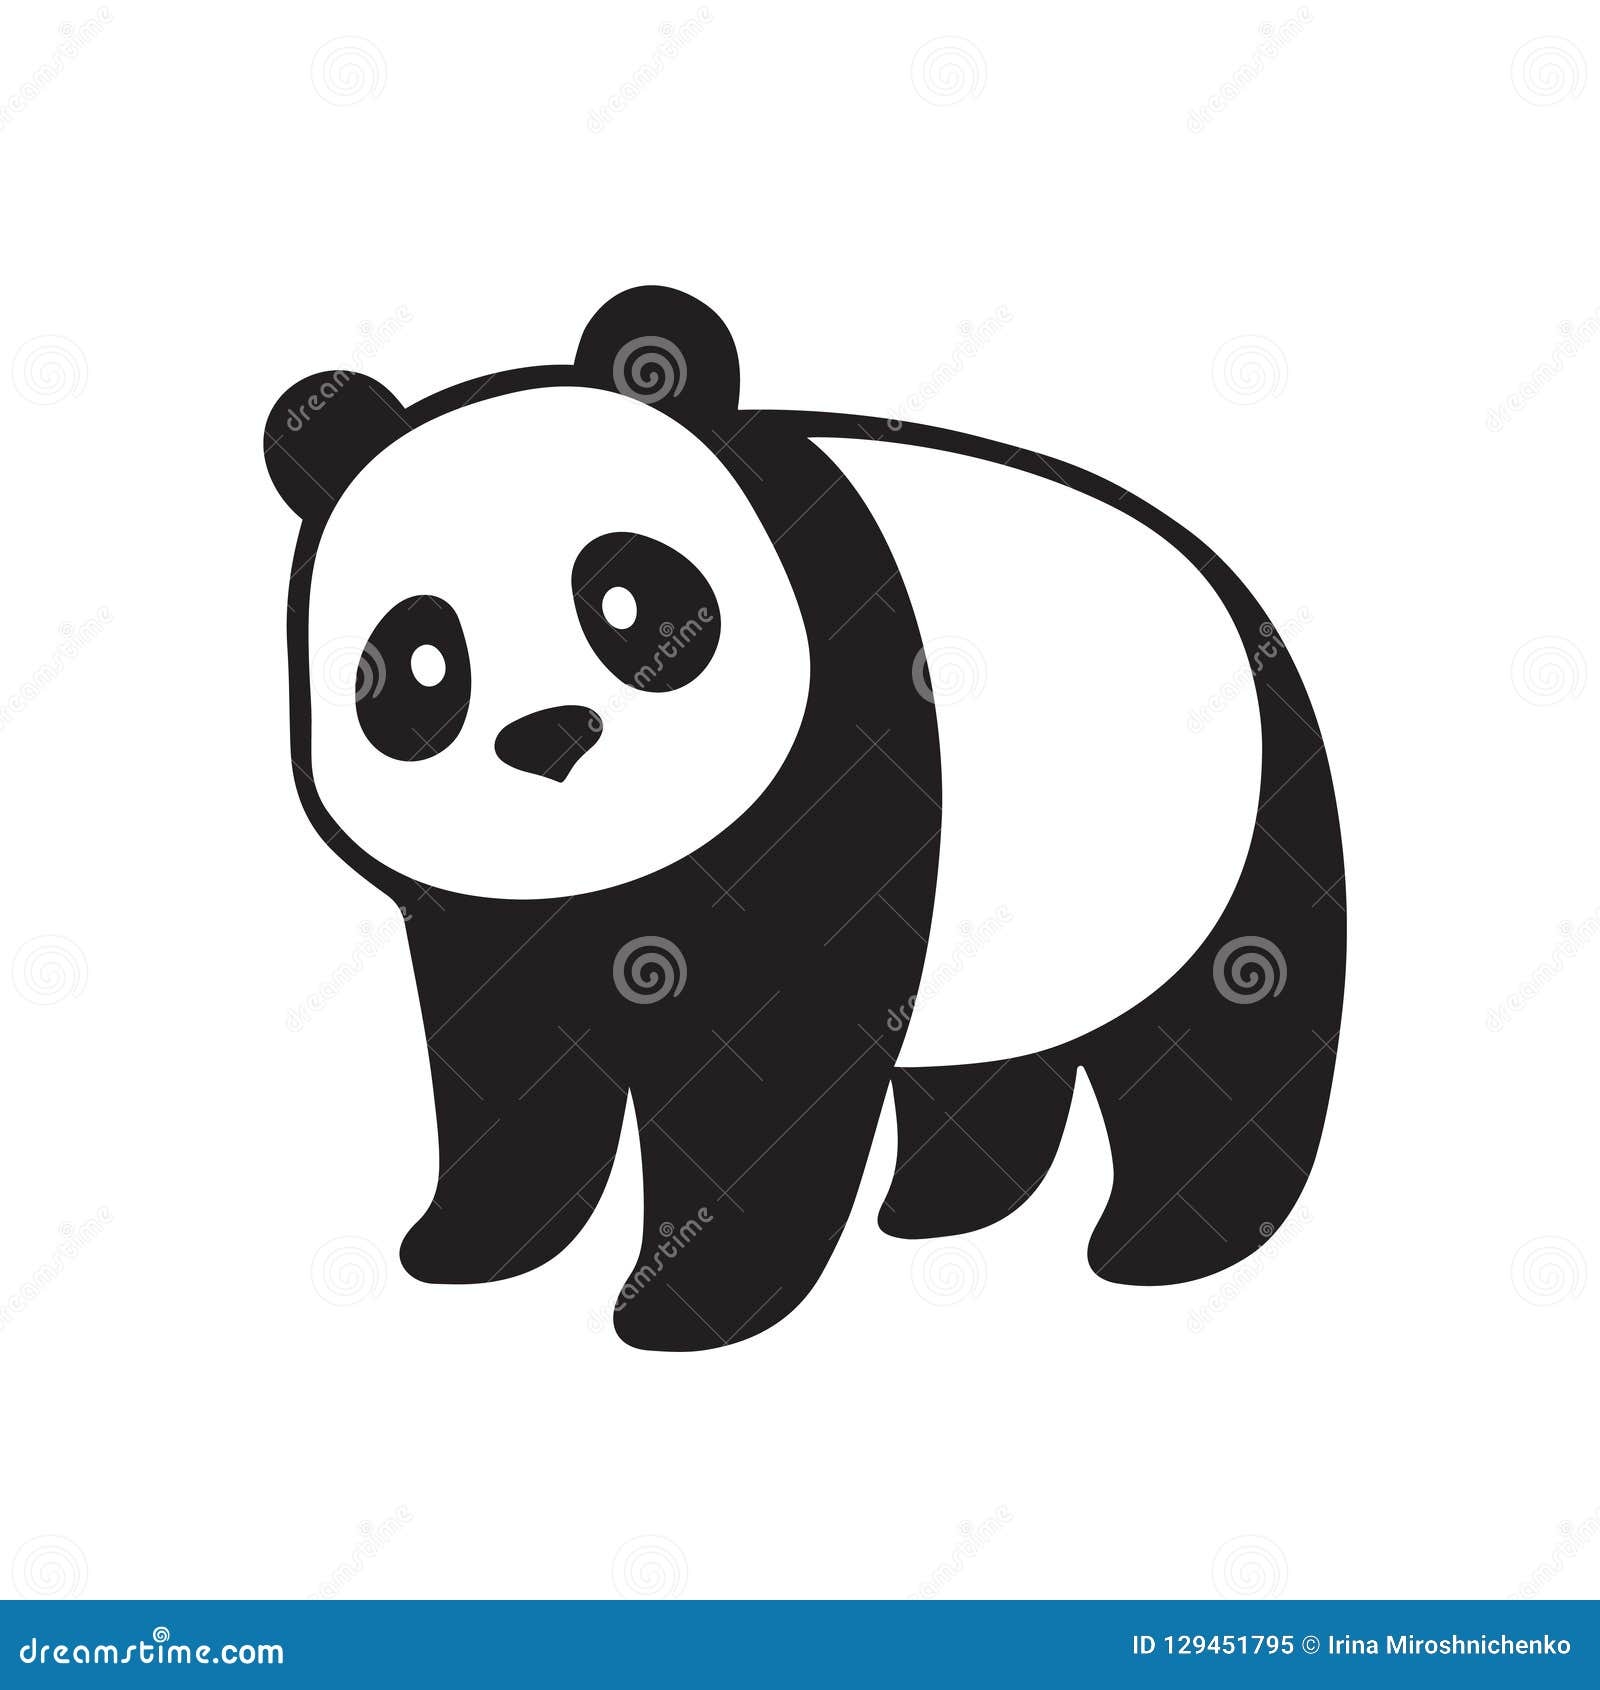 Panda Drawing | Panda drawing, Cute panda drawing, Easy drawings